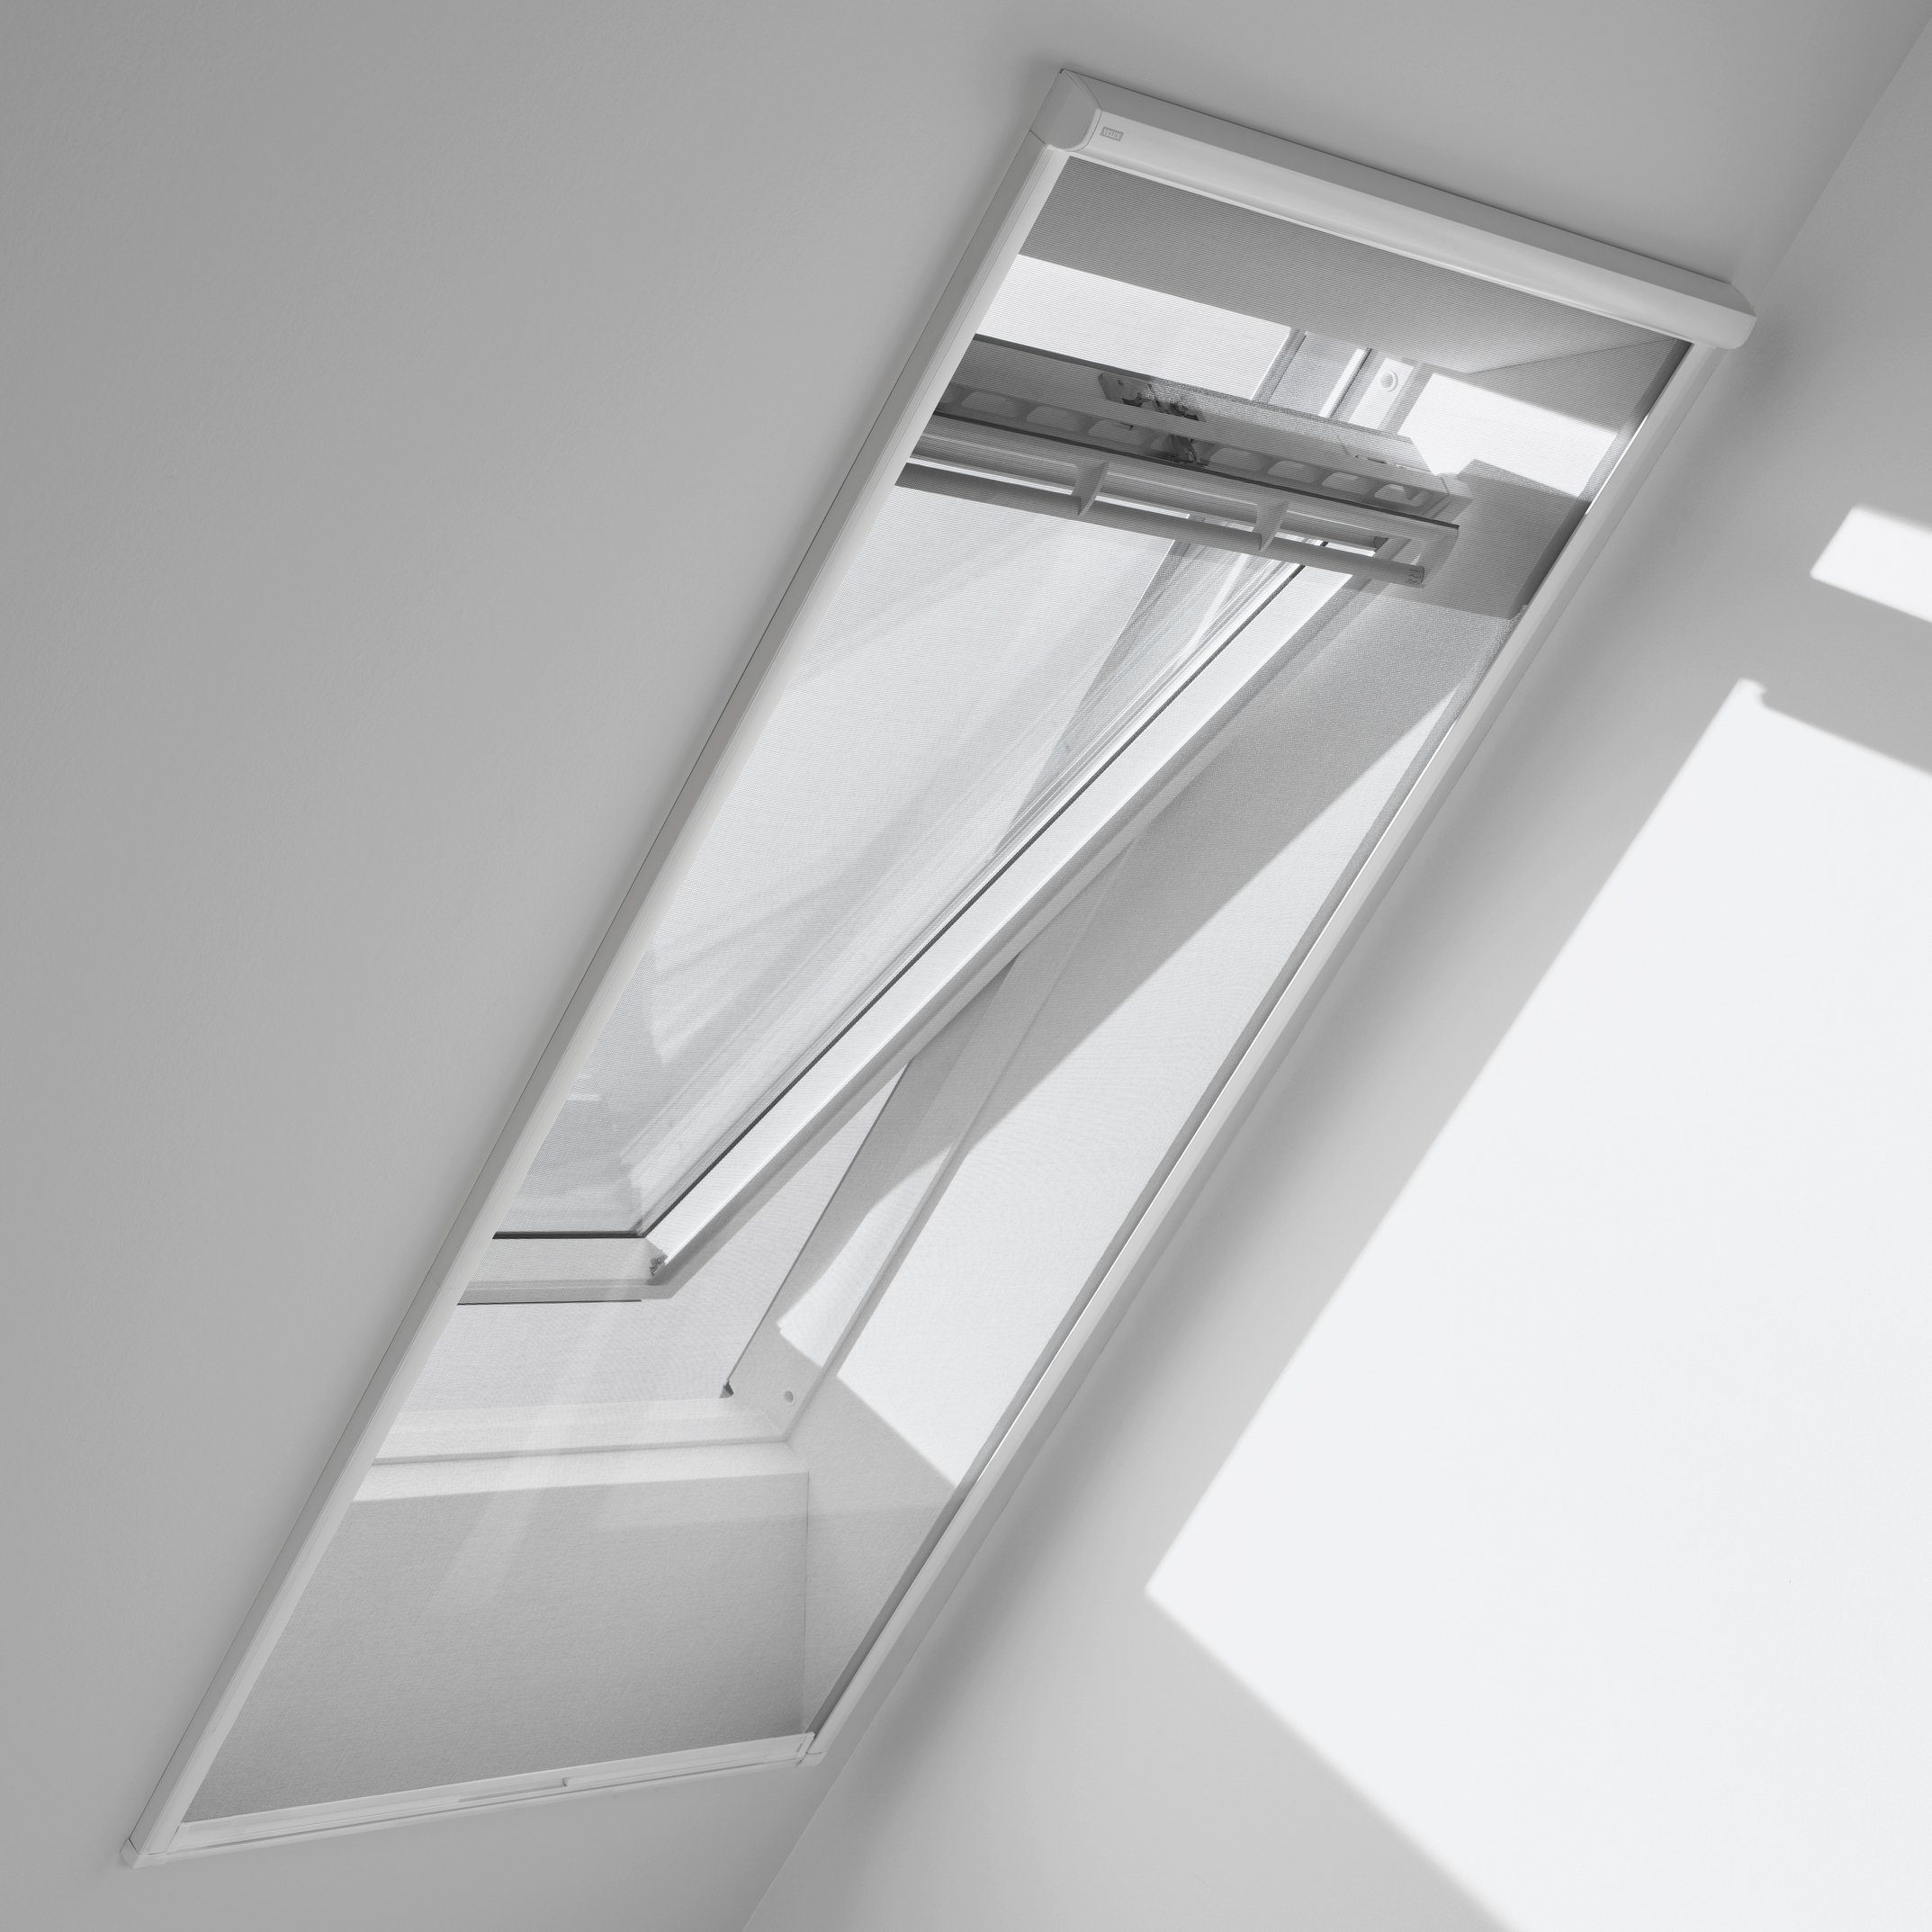 Insektenschutzrollo für Dachfenster, ZIL MK10 0000SWL, VELUX, transparent, verschraubt, für max. Dachausschnitt: 760 x 2400 mm